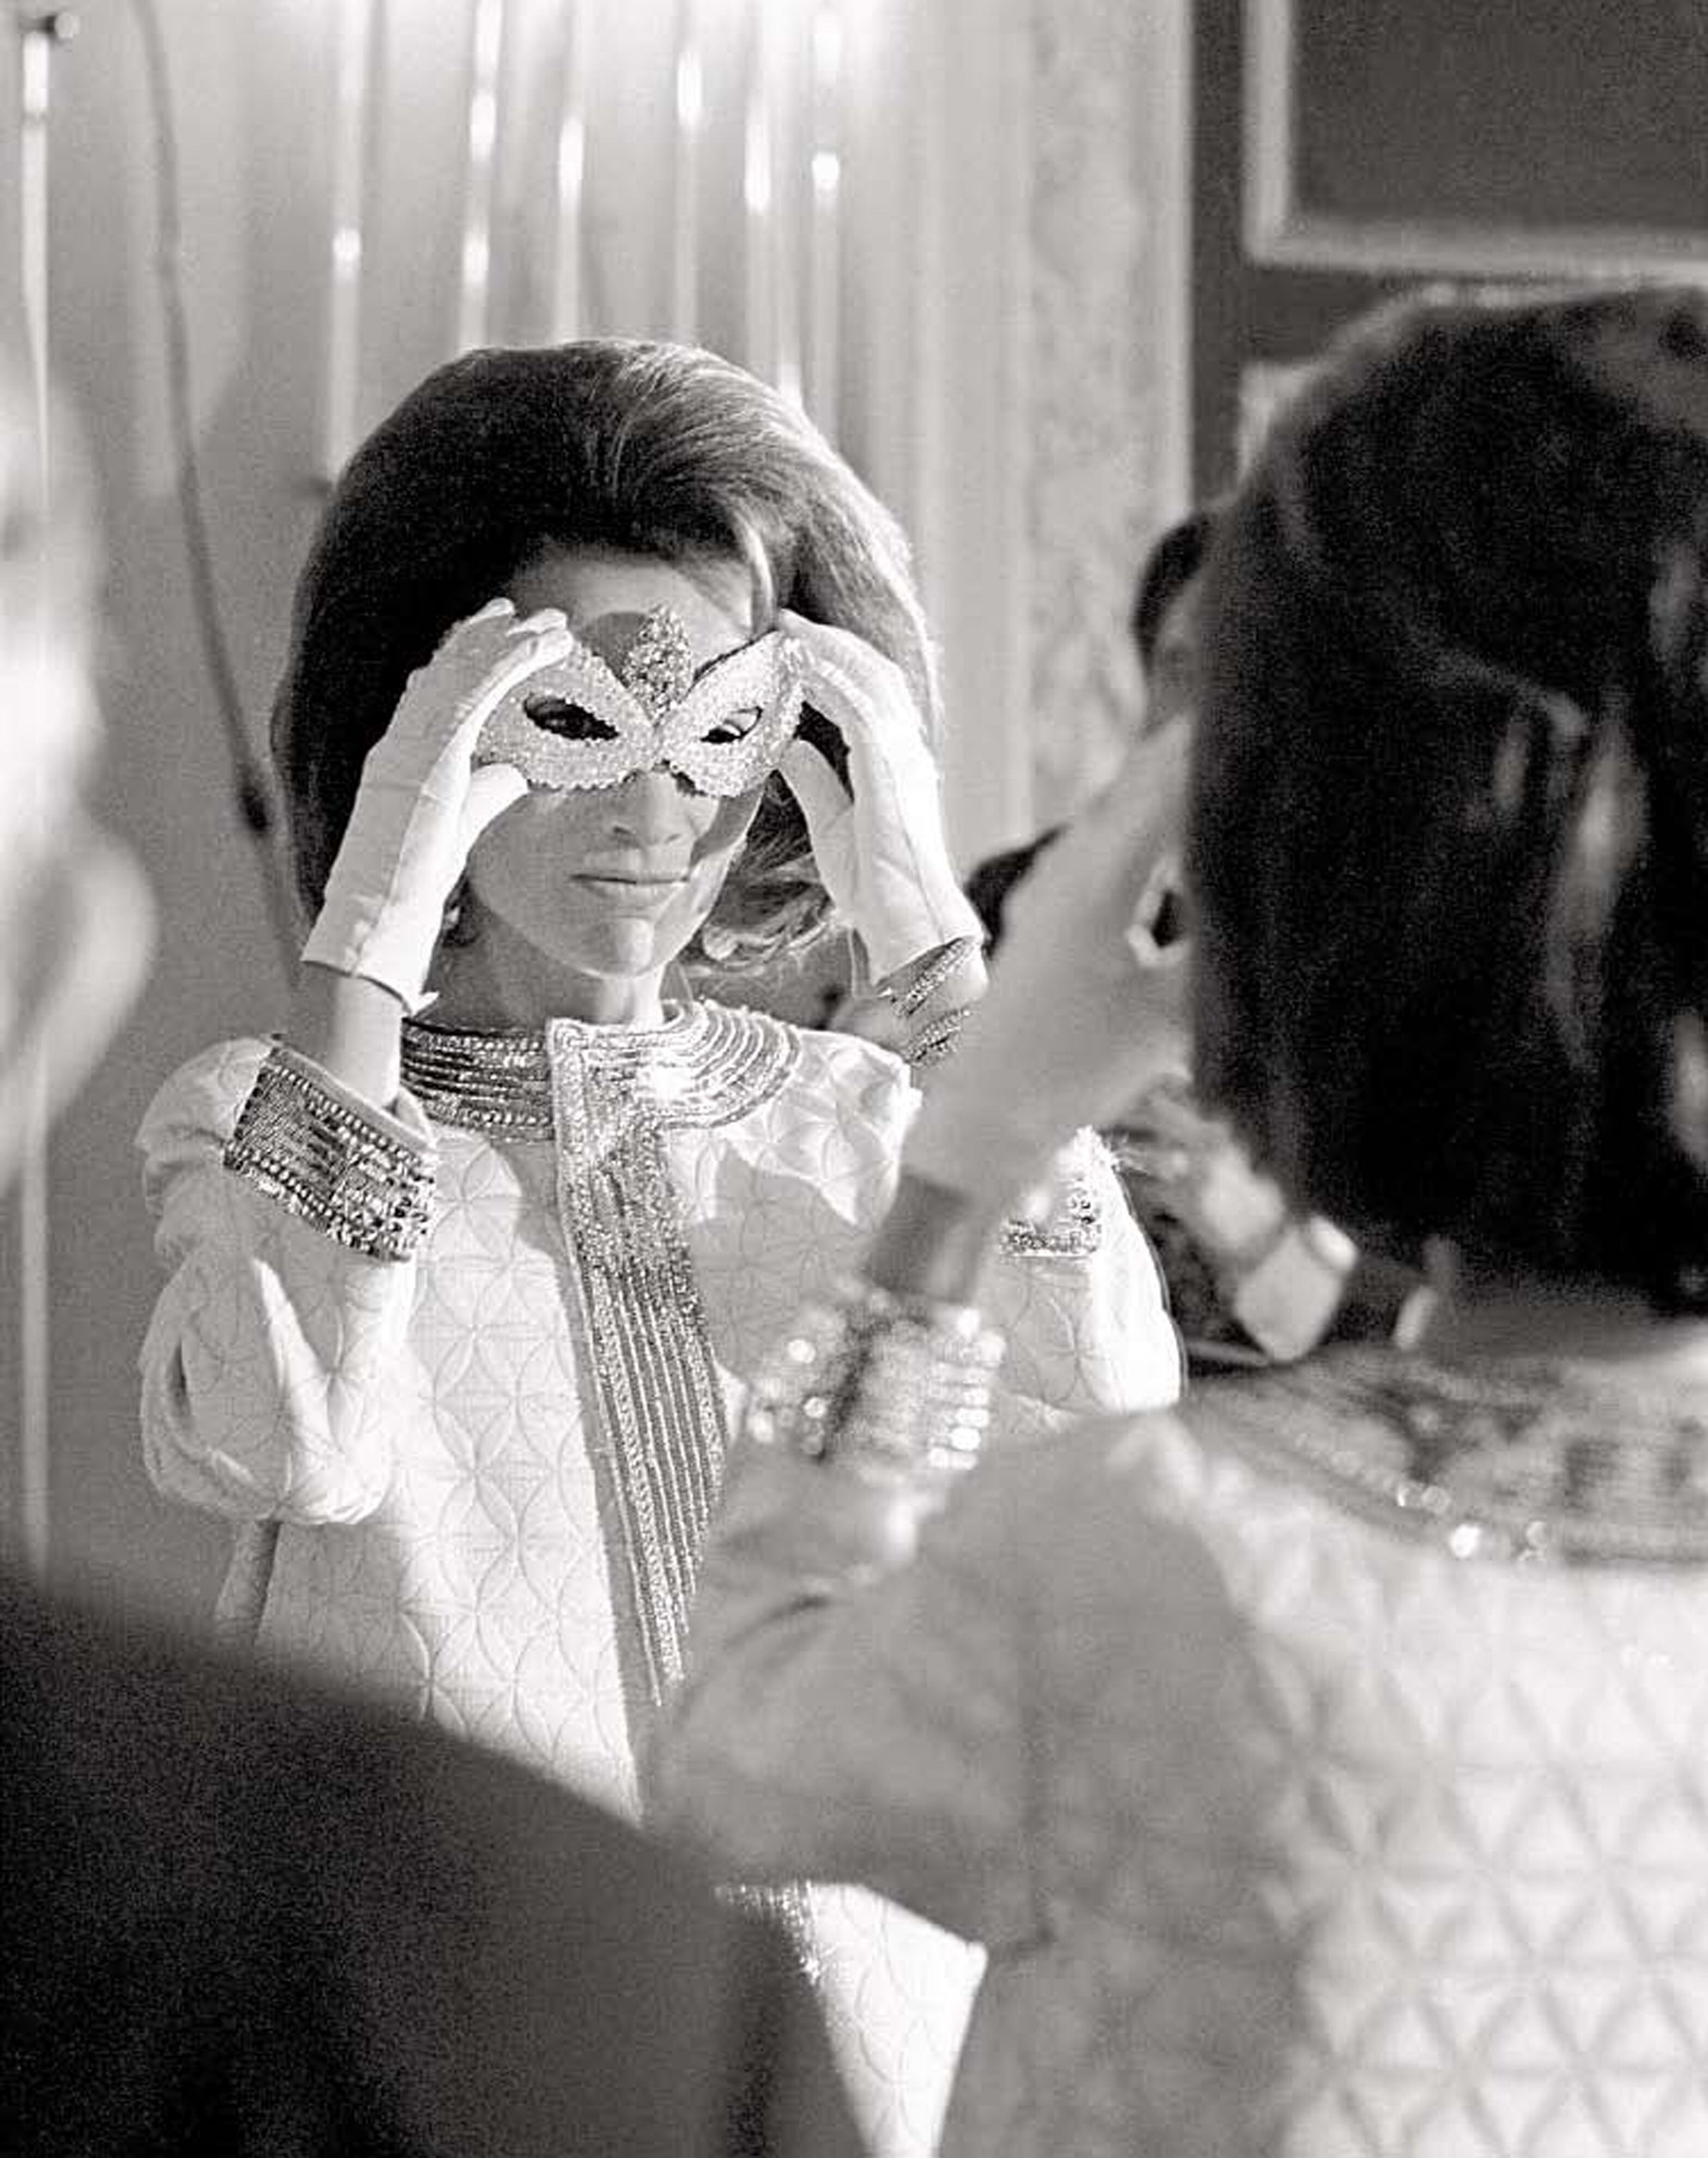 La prrincesa Lee Radizwell, hermana de Jackie Kennedy, se ajusta la máscara después de llegar al baile.